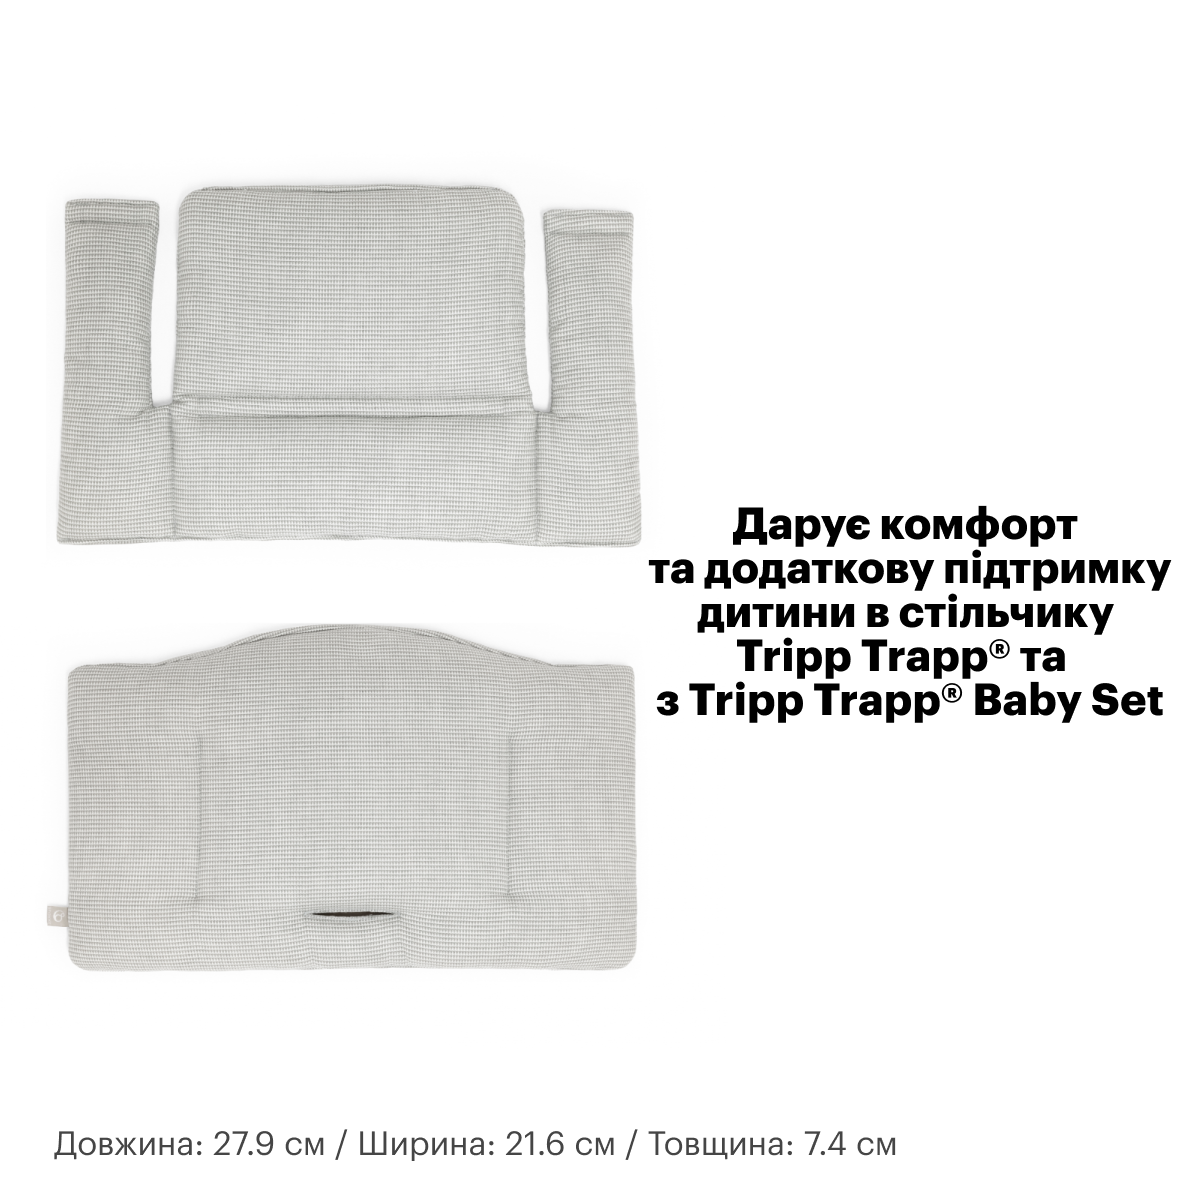 Текстиль для стульчика Stokke Tripp Trapp Icon grey (100359) - фото 5